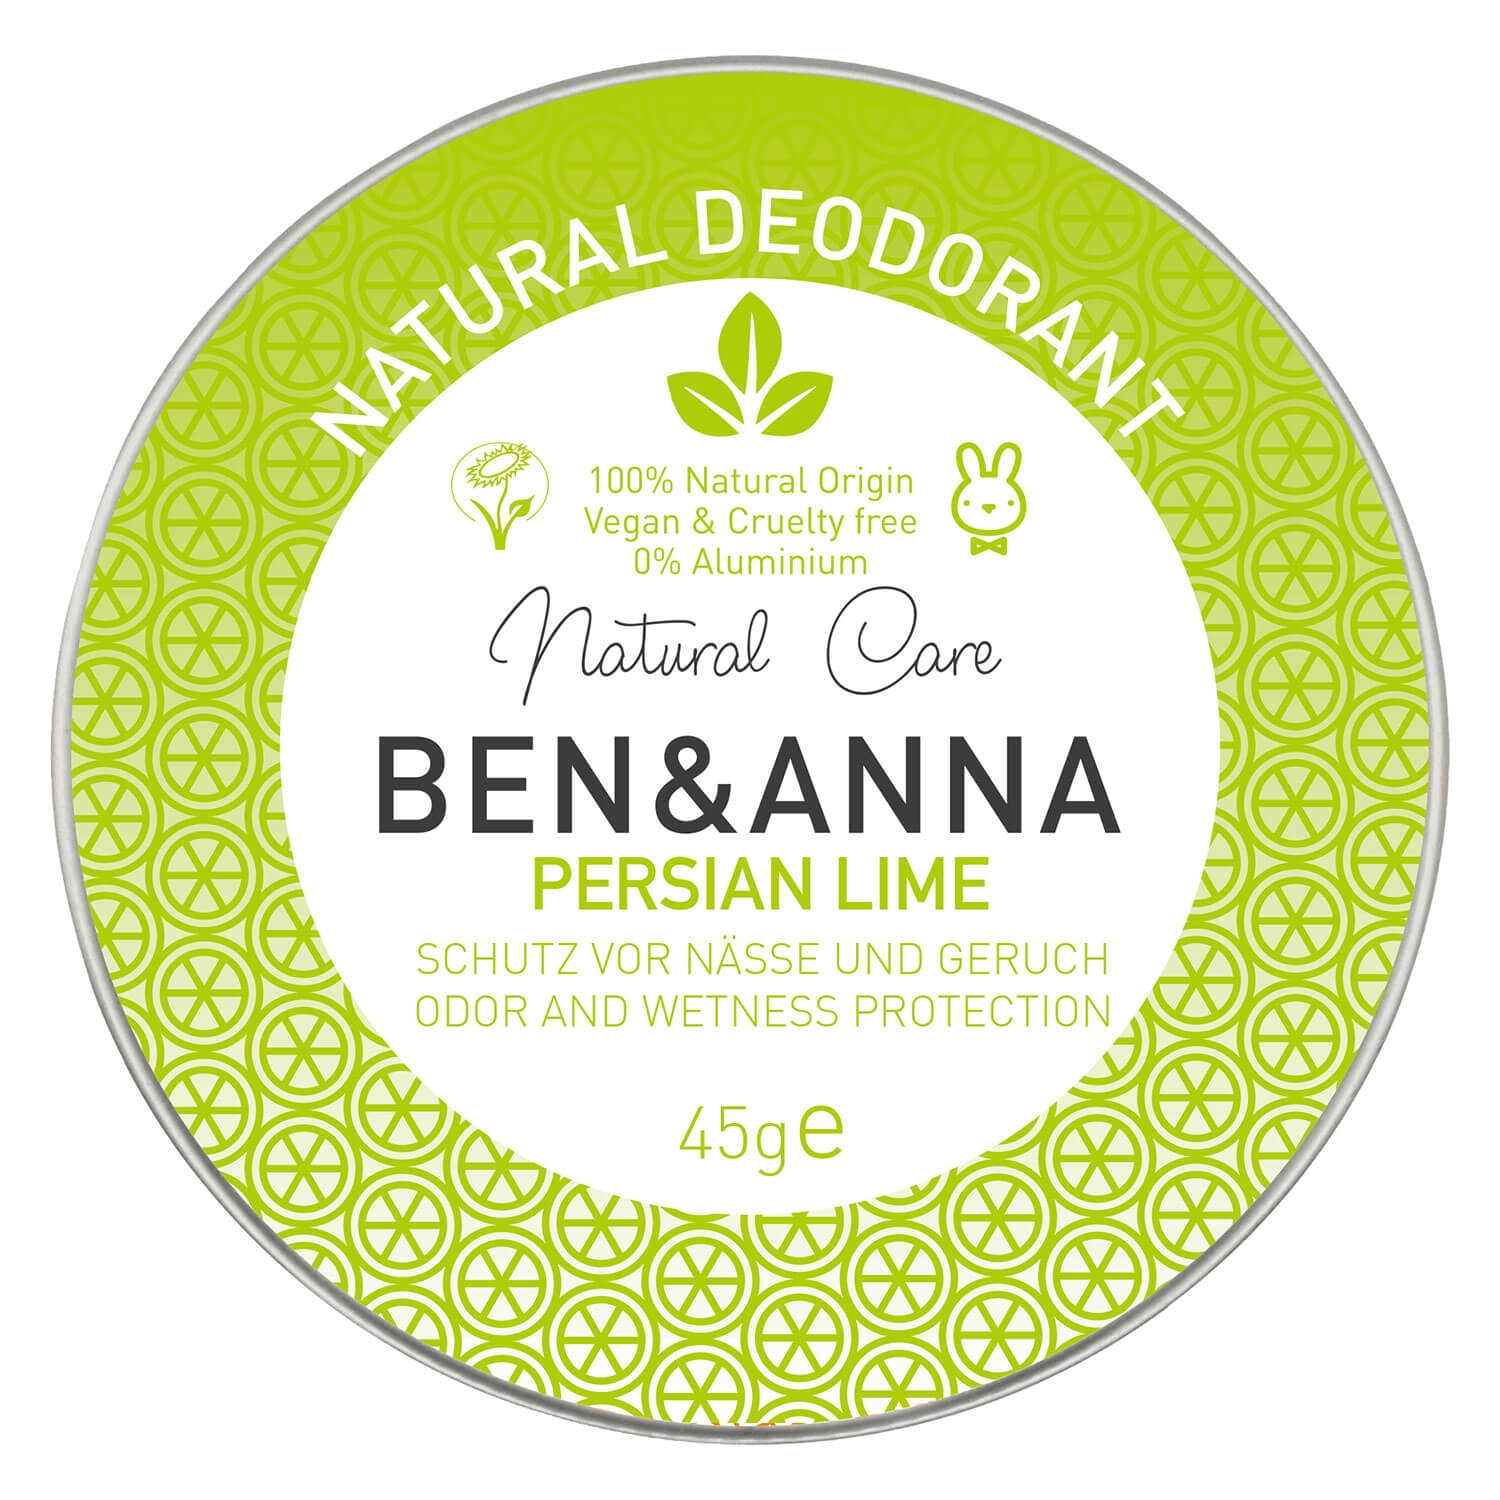 Produktbild von BEN&ANNA - Persian Lime Dose